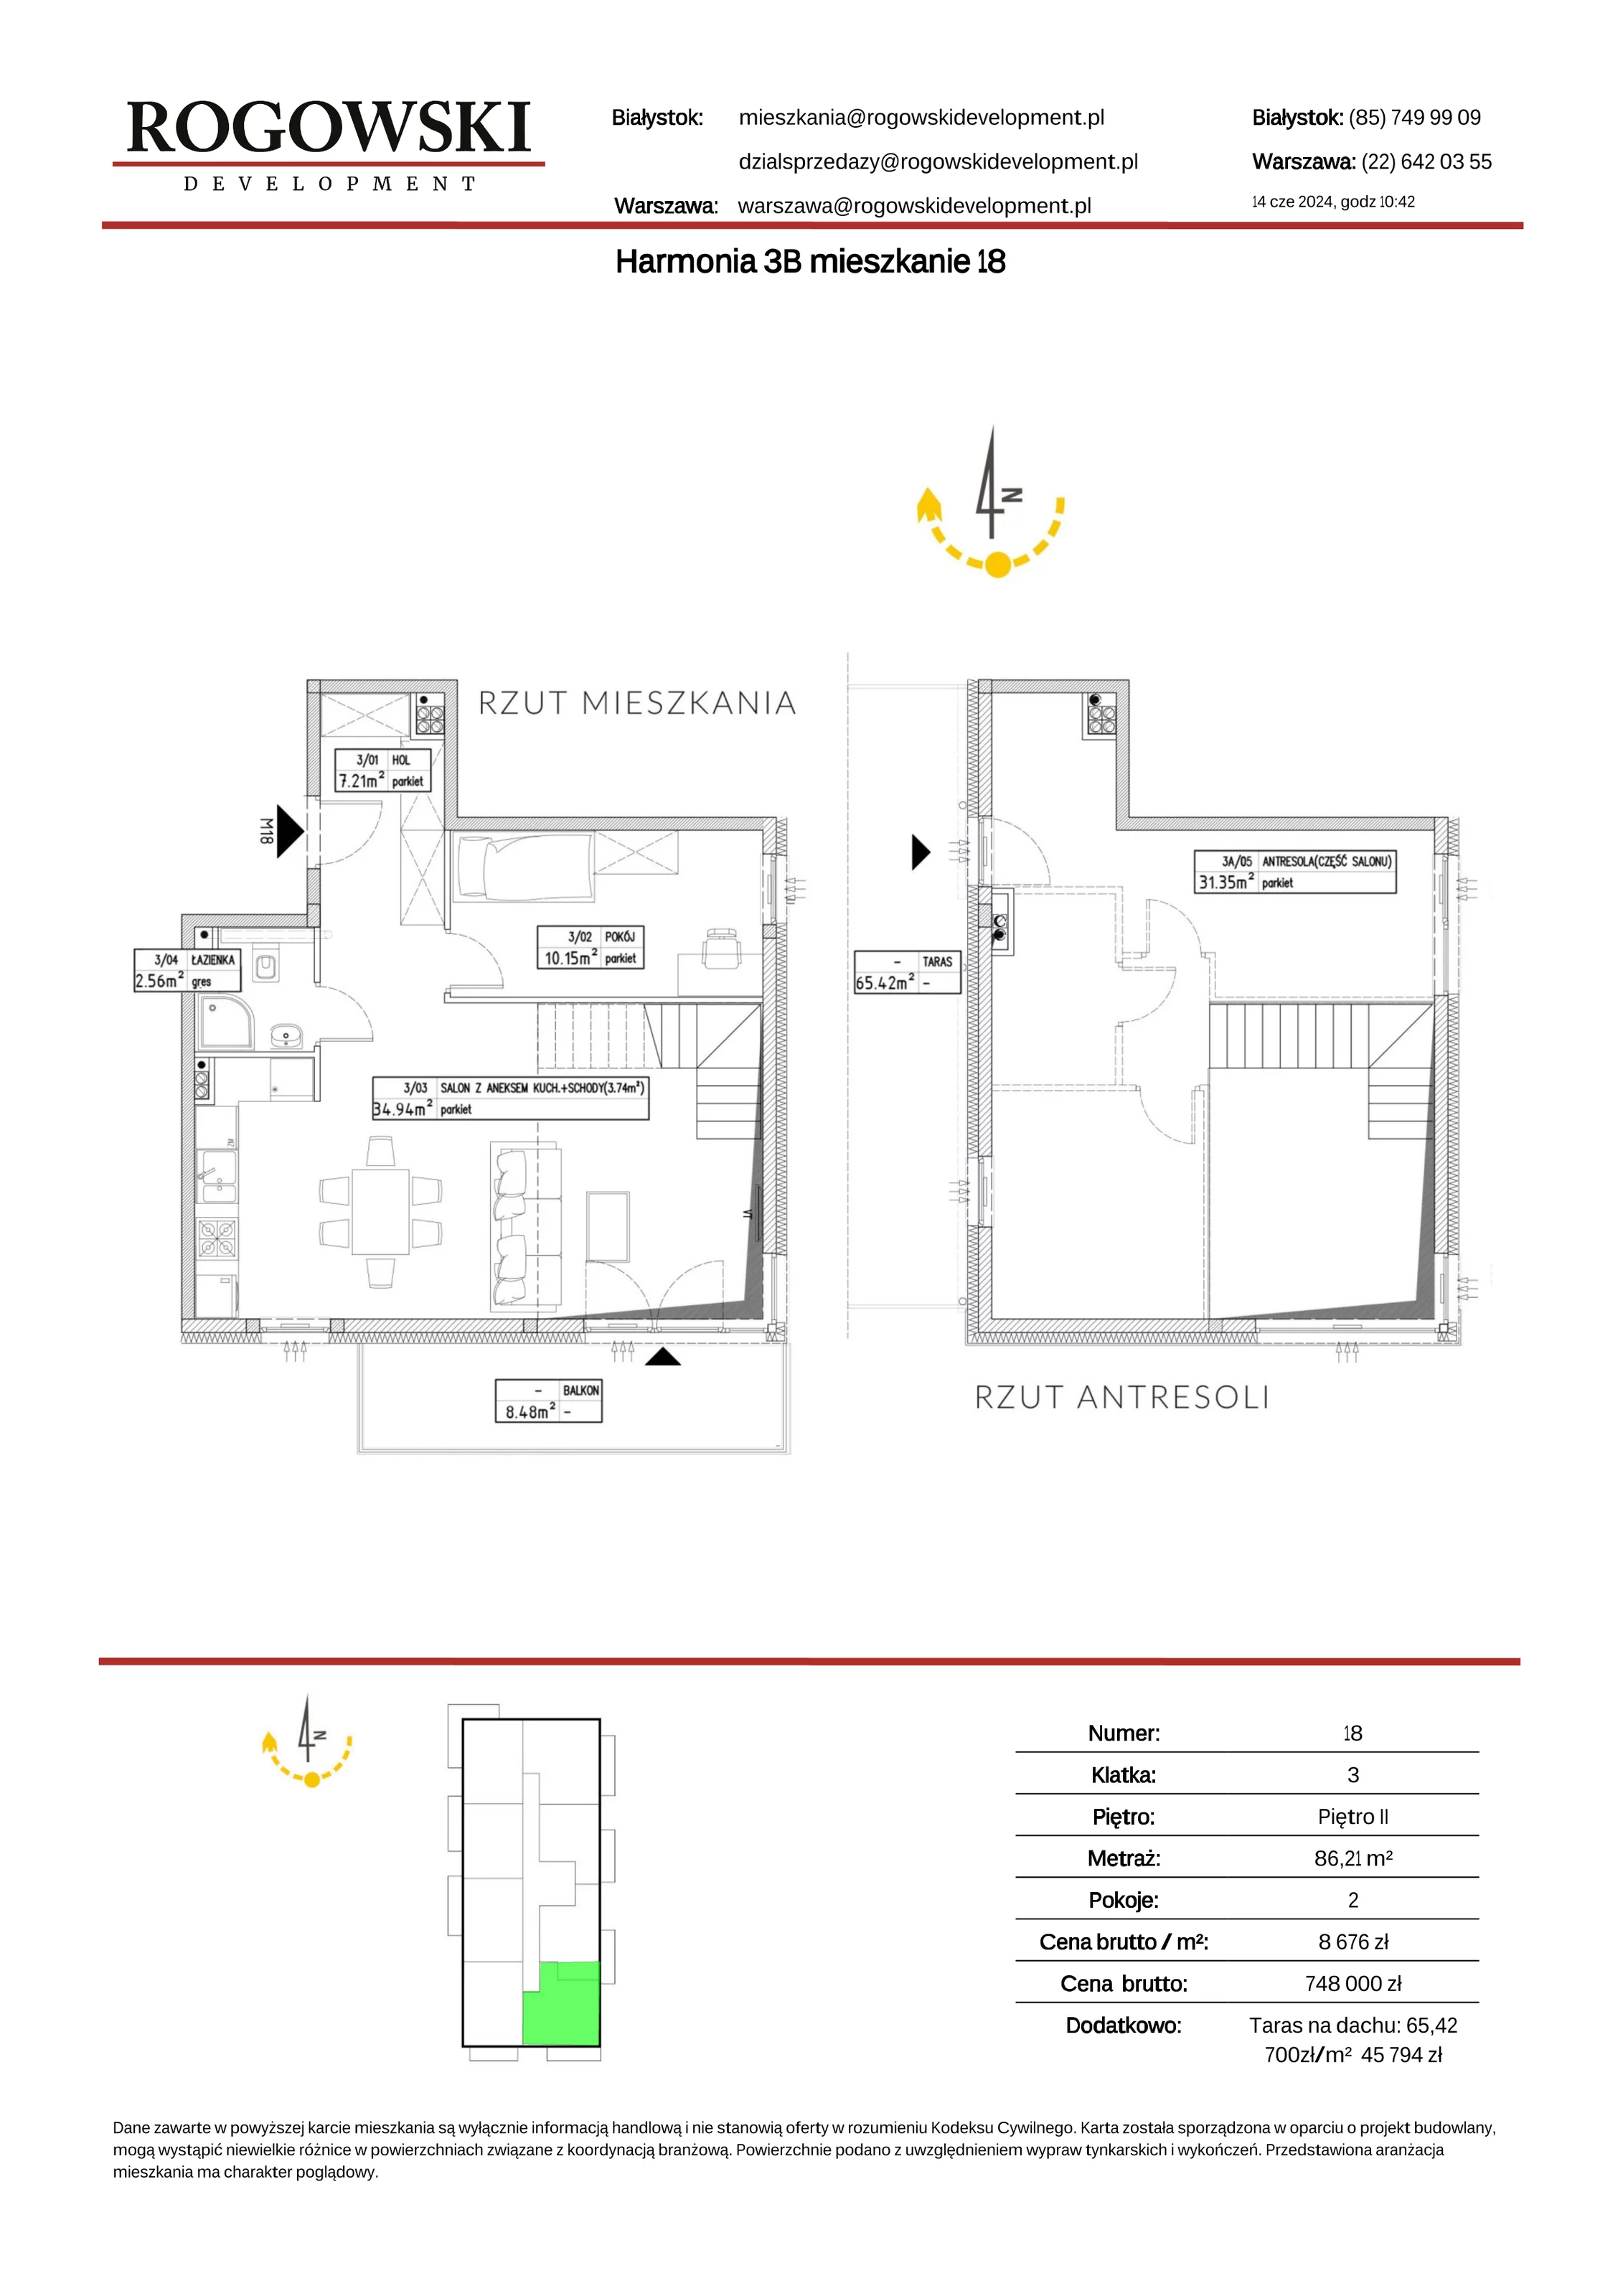 Mieszkanie 86,21 m², piętro 2, oferta nr 3B/18, Osiedle Twoja Harmonia, Białystok, Zawady, ul. Lodowa / Mroźna